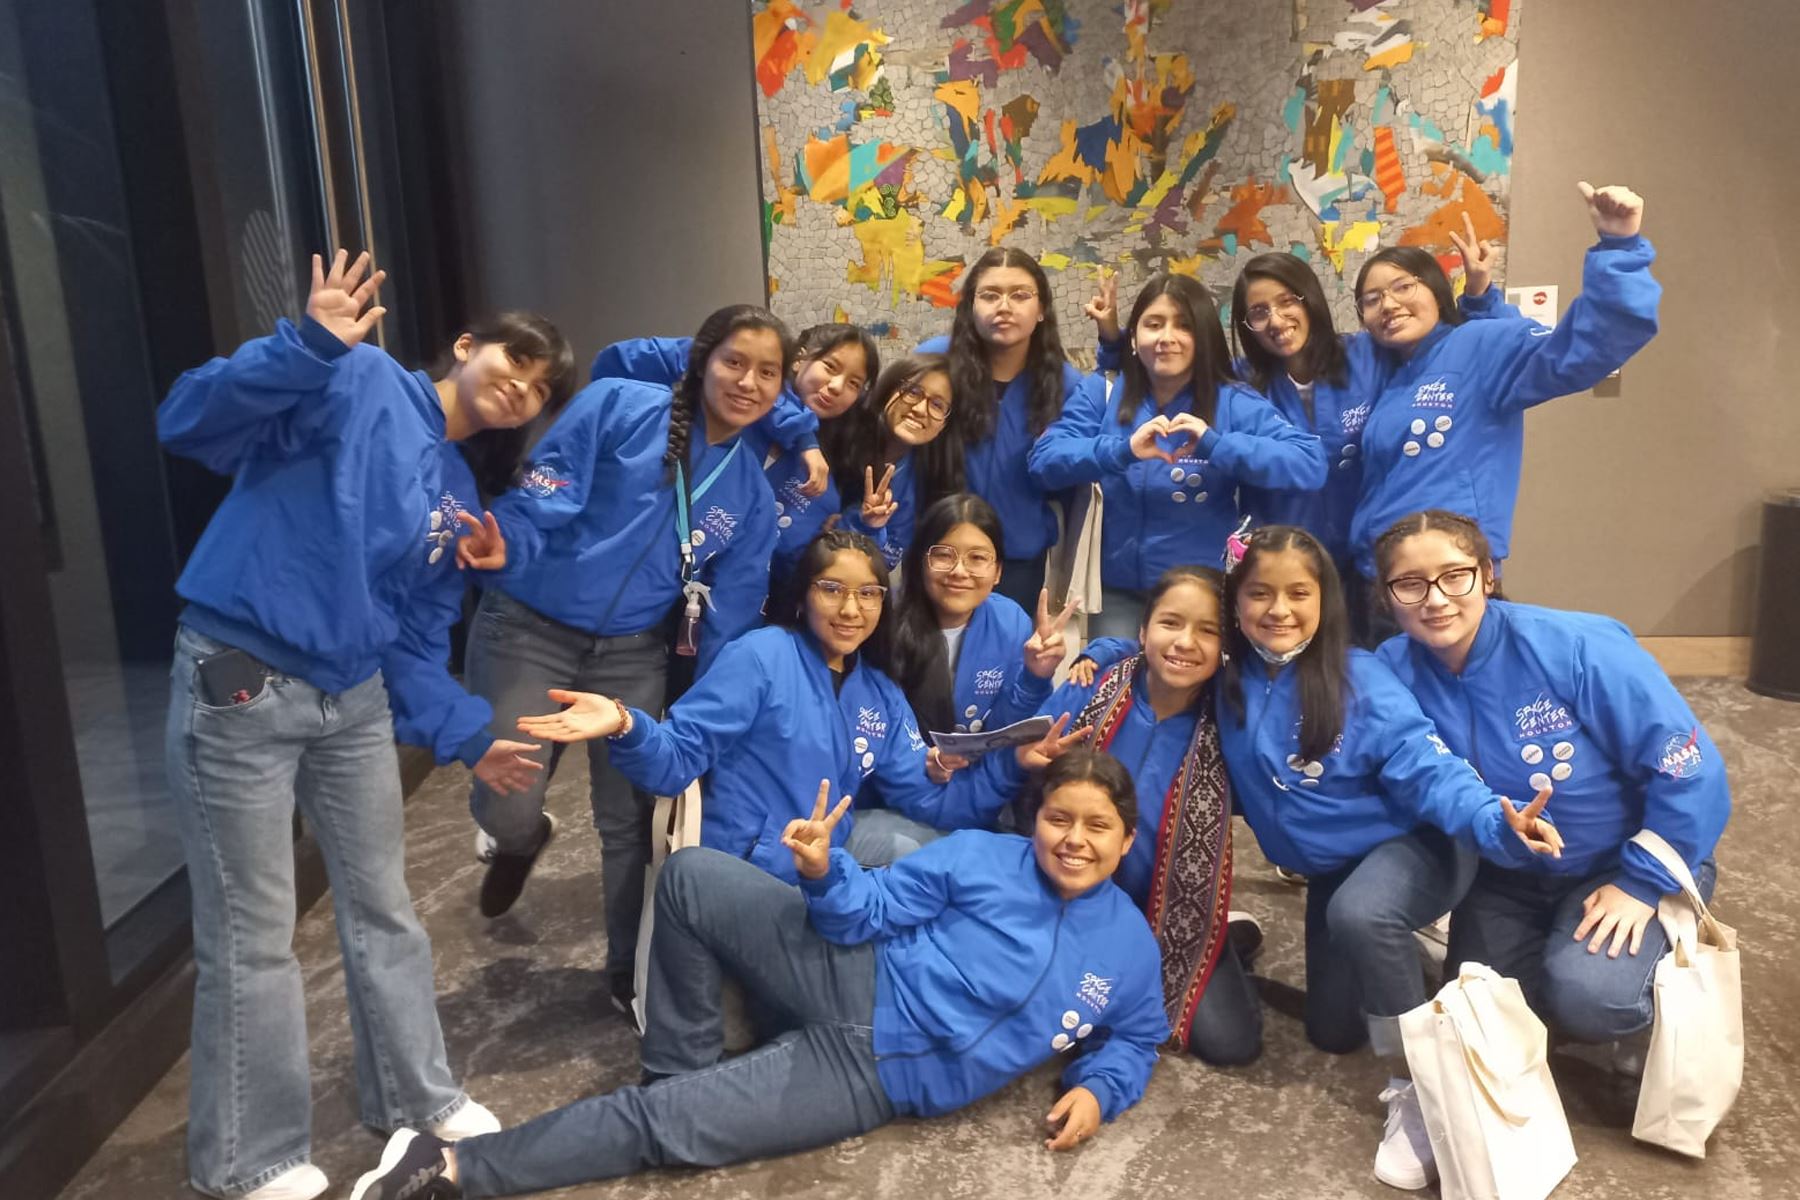 Escolares peruanas que visitarán la NASA viajan hoy a Estados Unidos | Noticias | Agencia Peruana de Noticias Andina